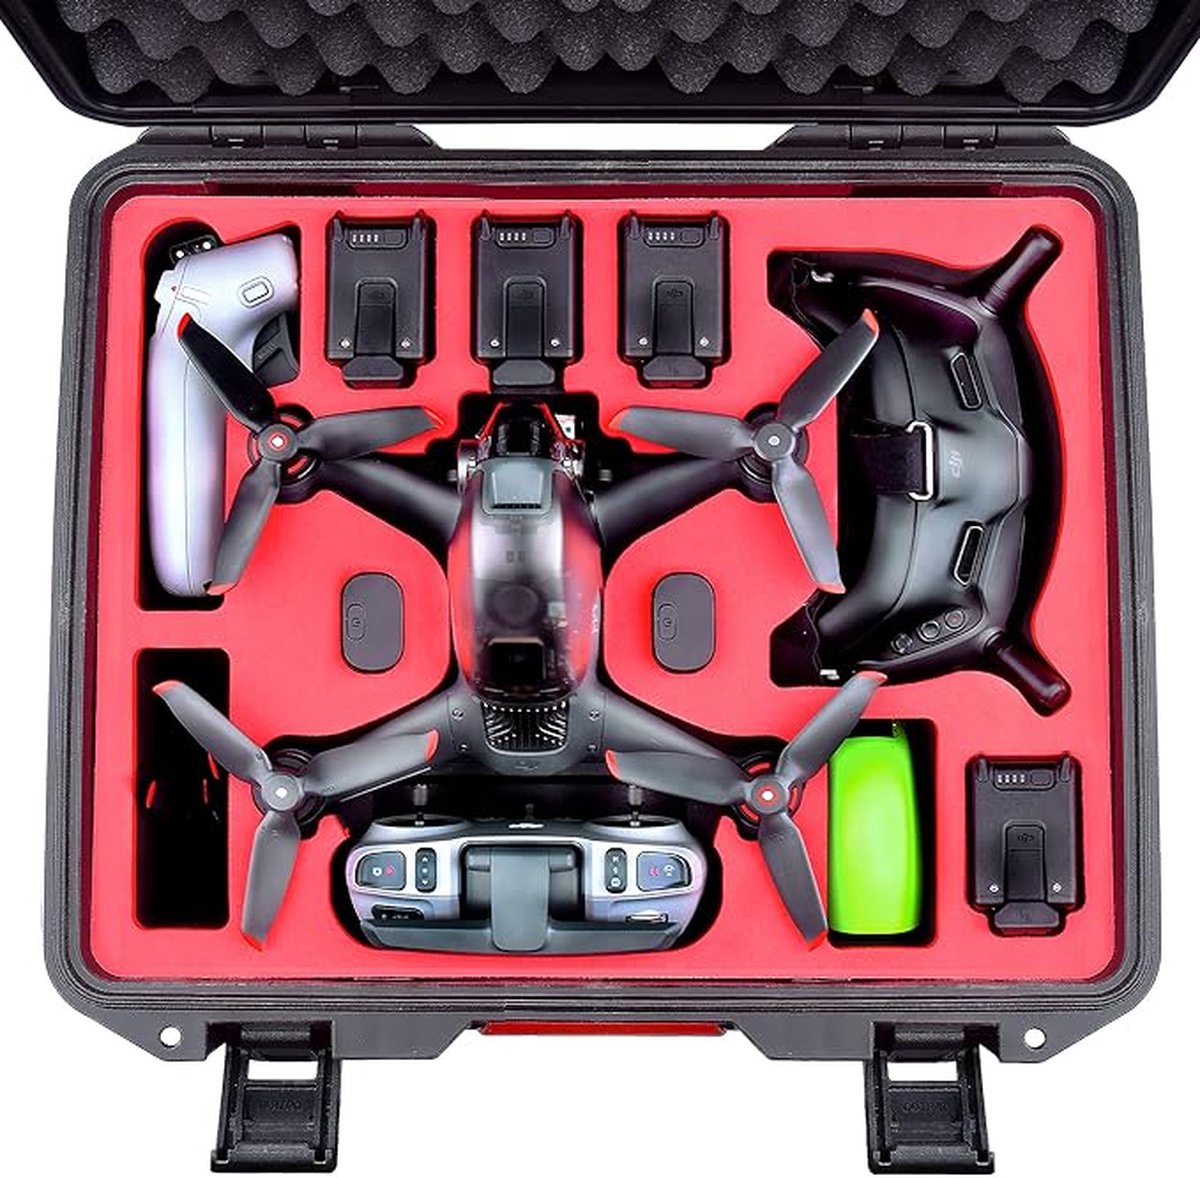 Professionele Waterdichte Hardcase Koffer voor DJI FPV - Optimale Bescherming en Gemak voor Uw Drone